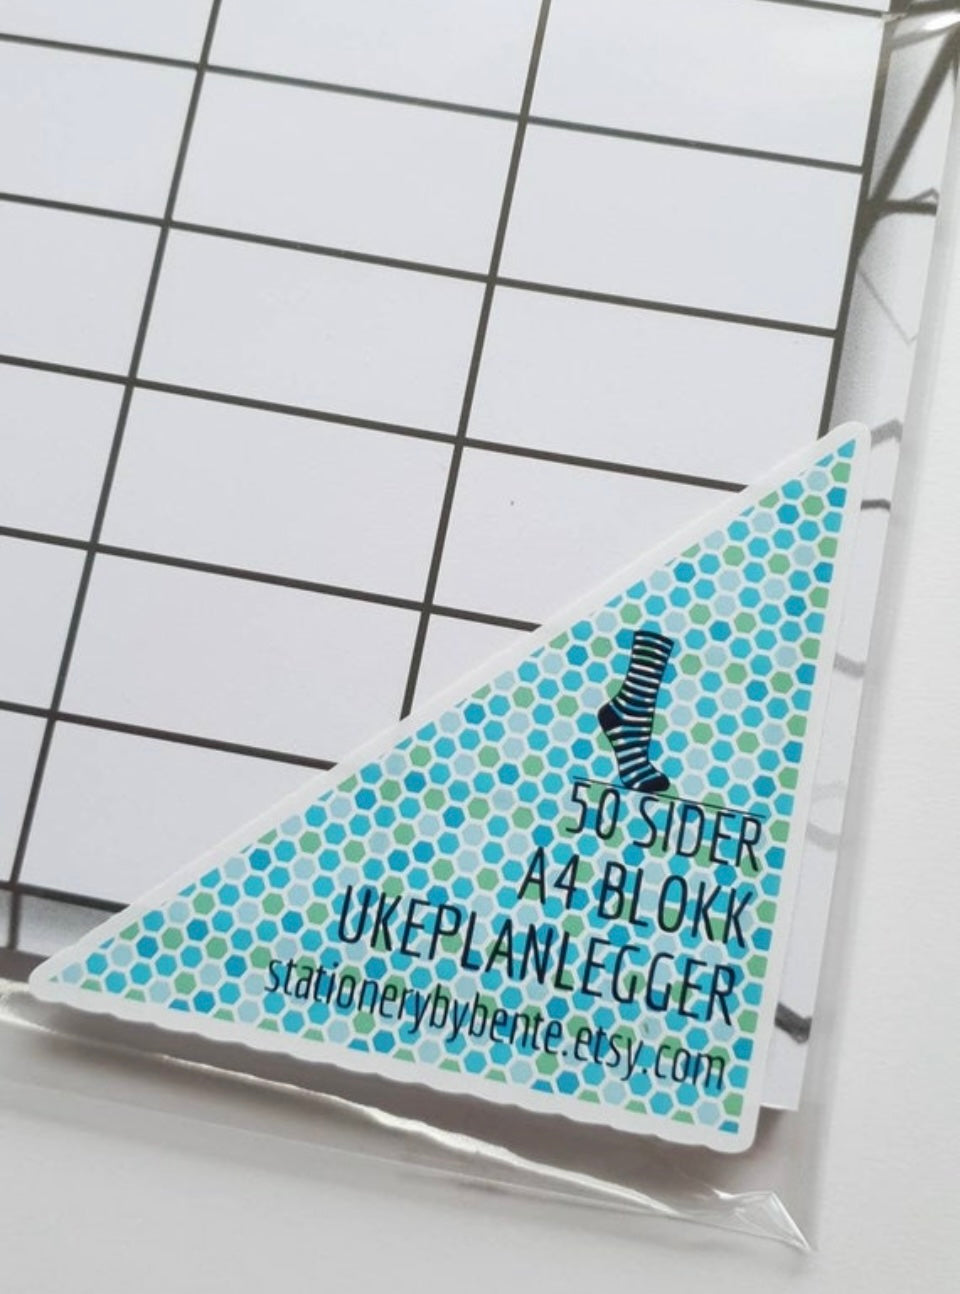 A4 UKEPLAN BLOKK 50 sheets - weekly planning pad